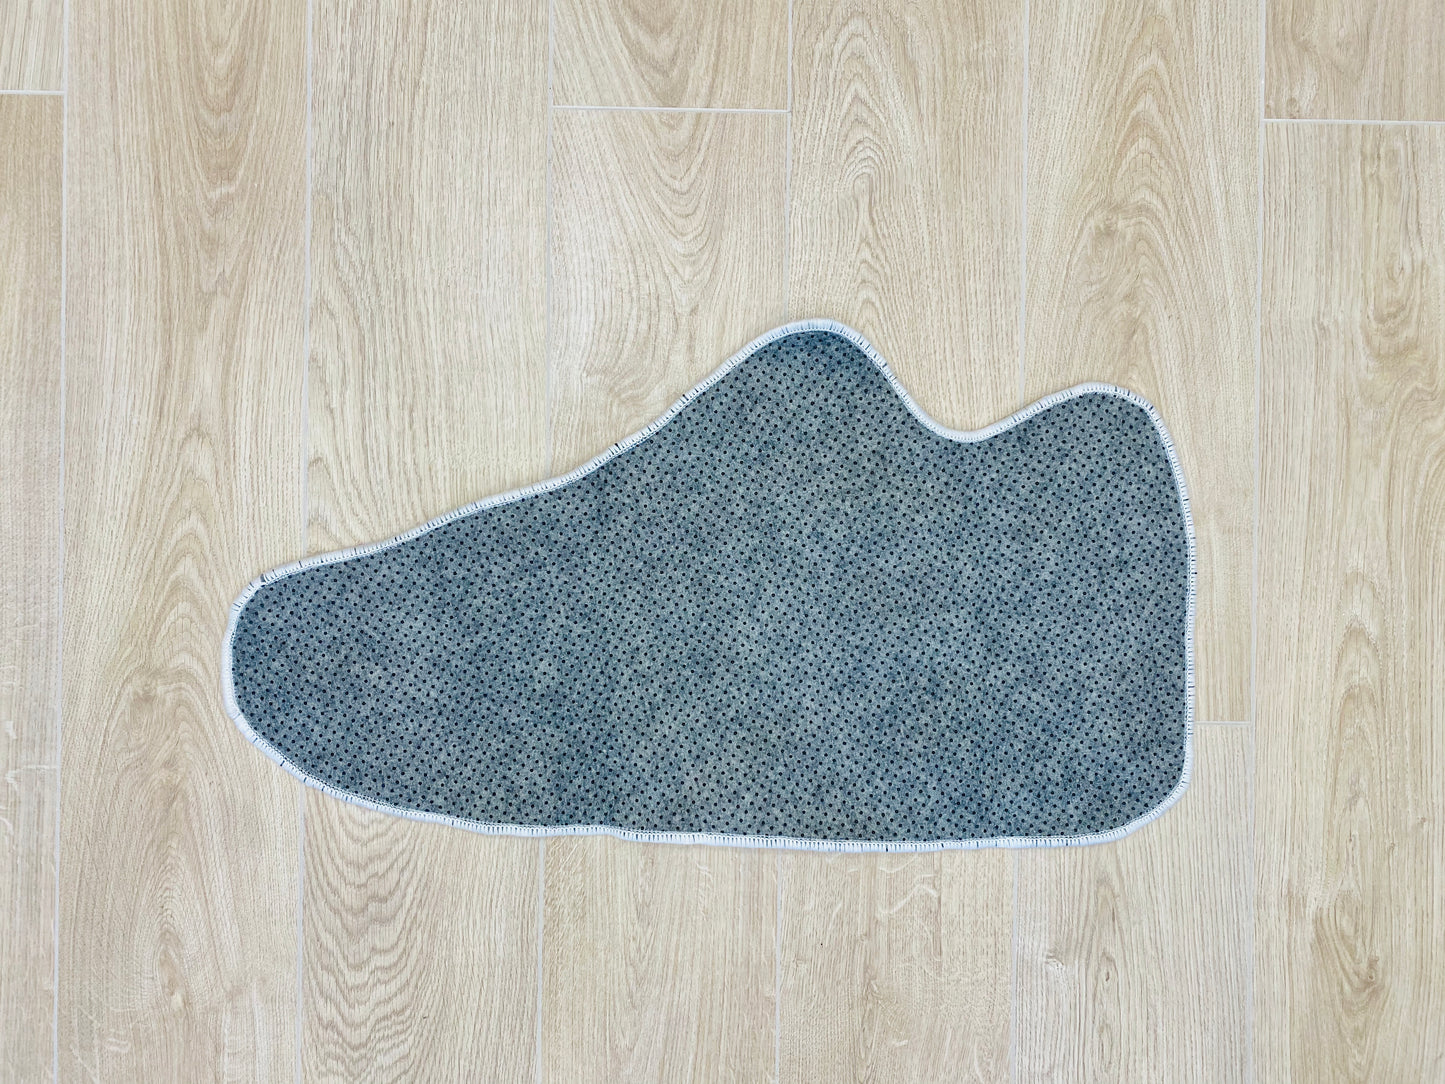 Nike Air Max 90 Sneaker Wool Thread Modern Accent Premium Area Carpet